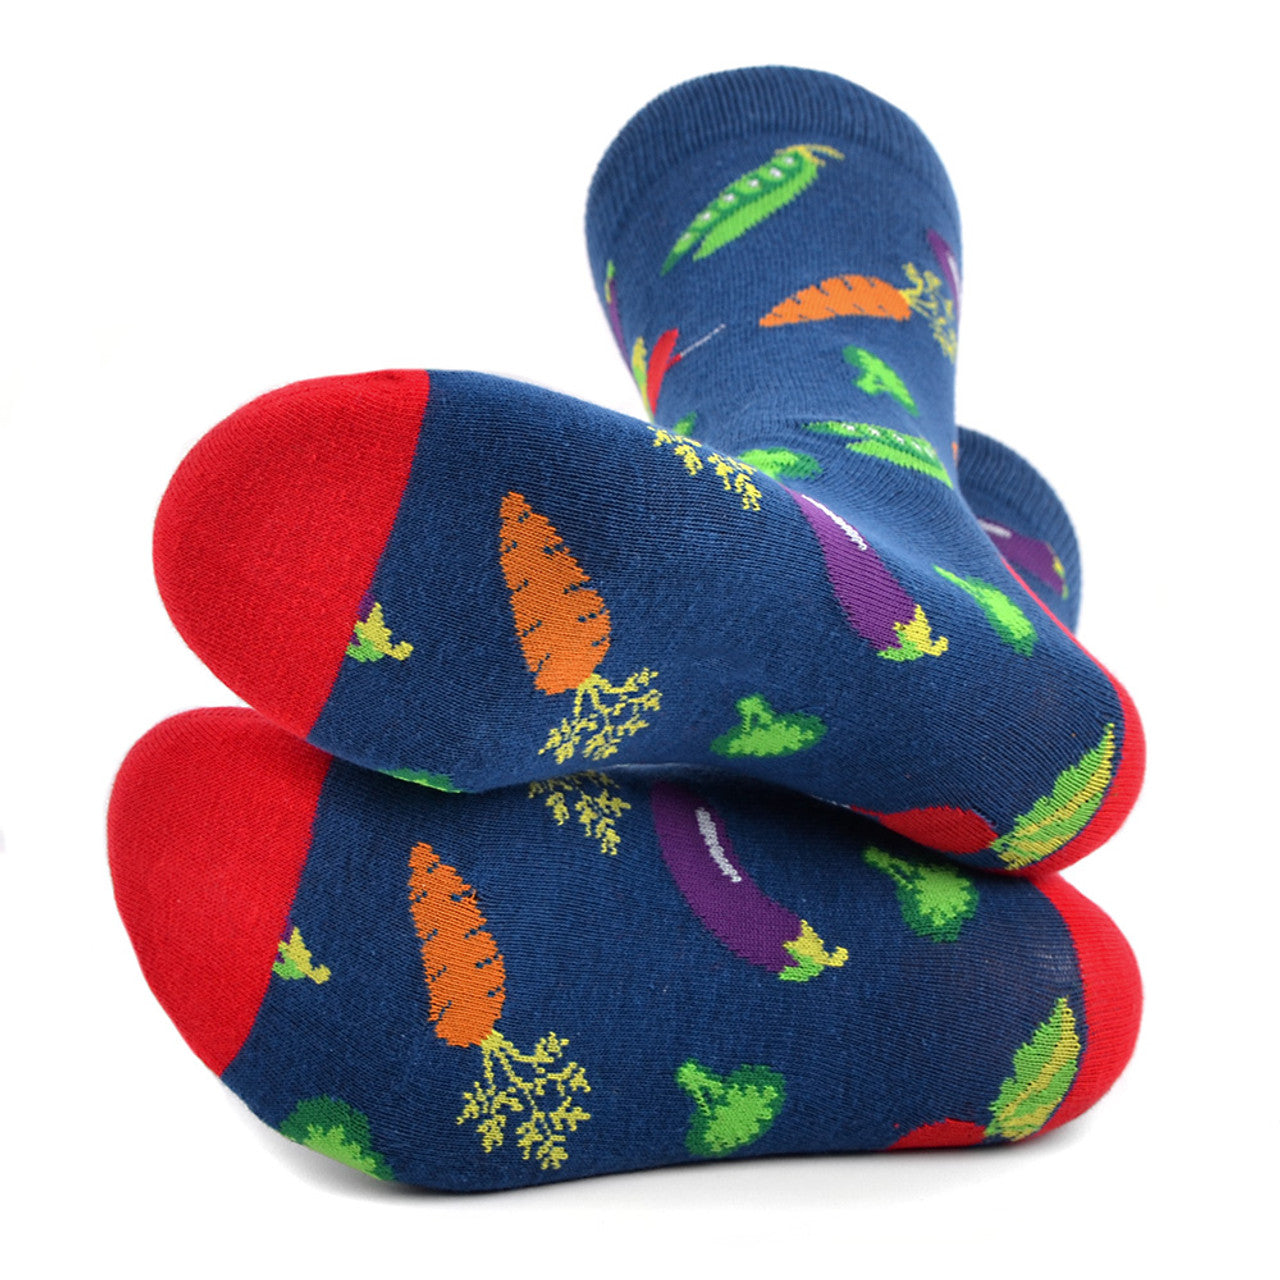 Men's Vegetables Socks Fun Novelty Socks Crazy Fun Lovely Food Crew Socks Groomsmen Wedding Socks